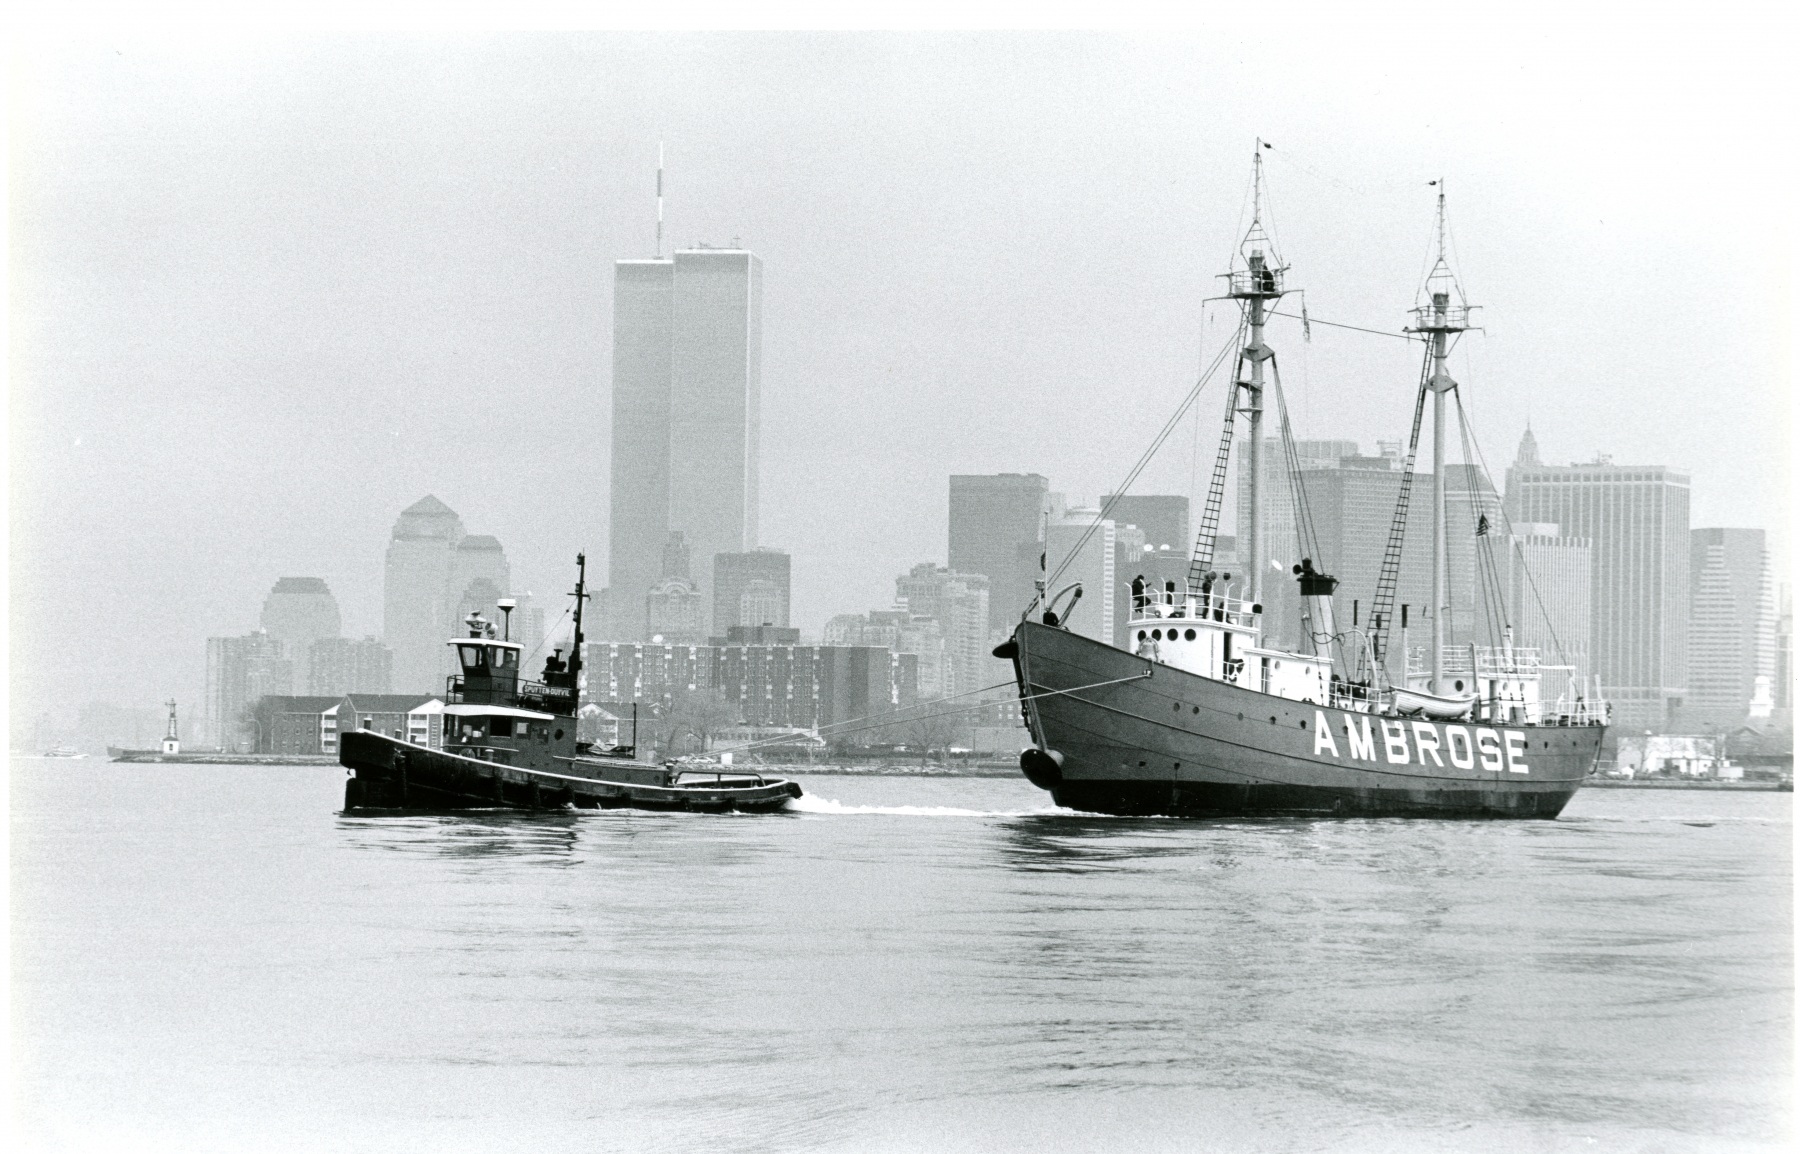 Tugboat Spuyten Duyvil towing lightship Ambrose, 1989